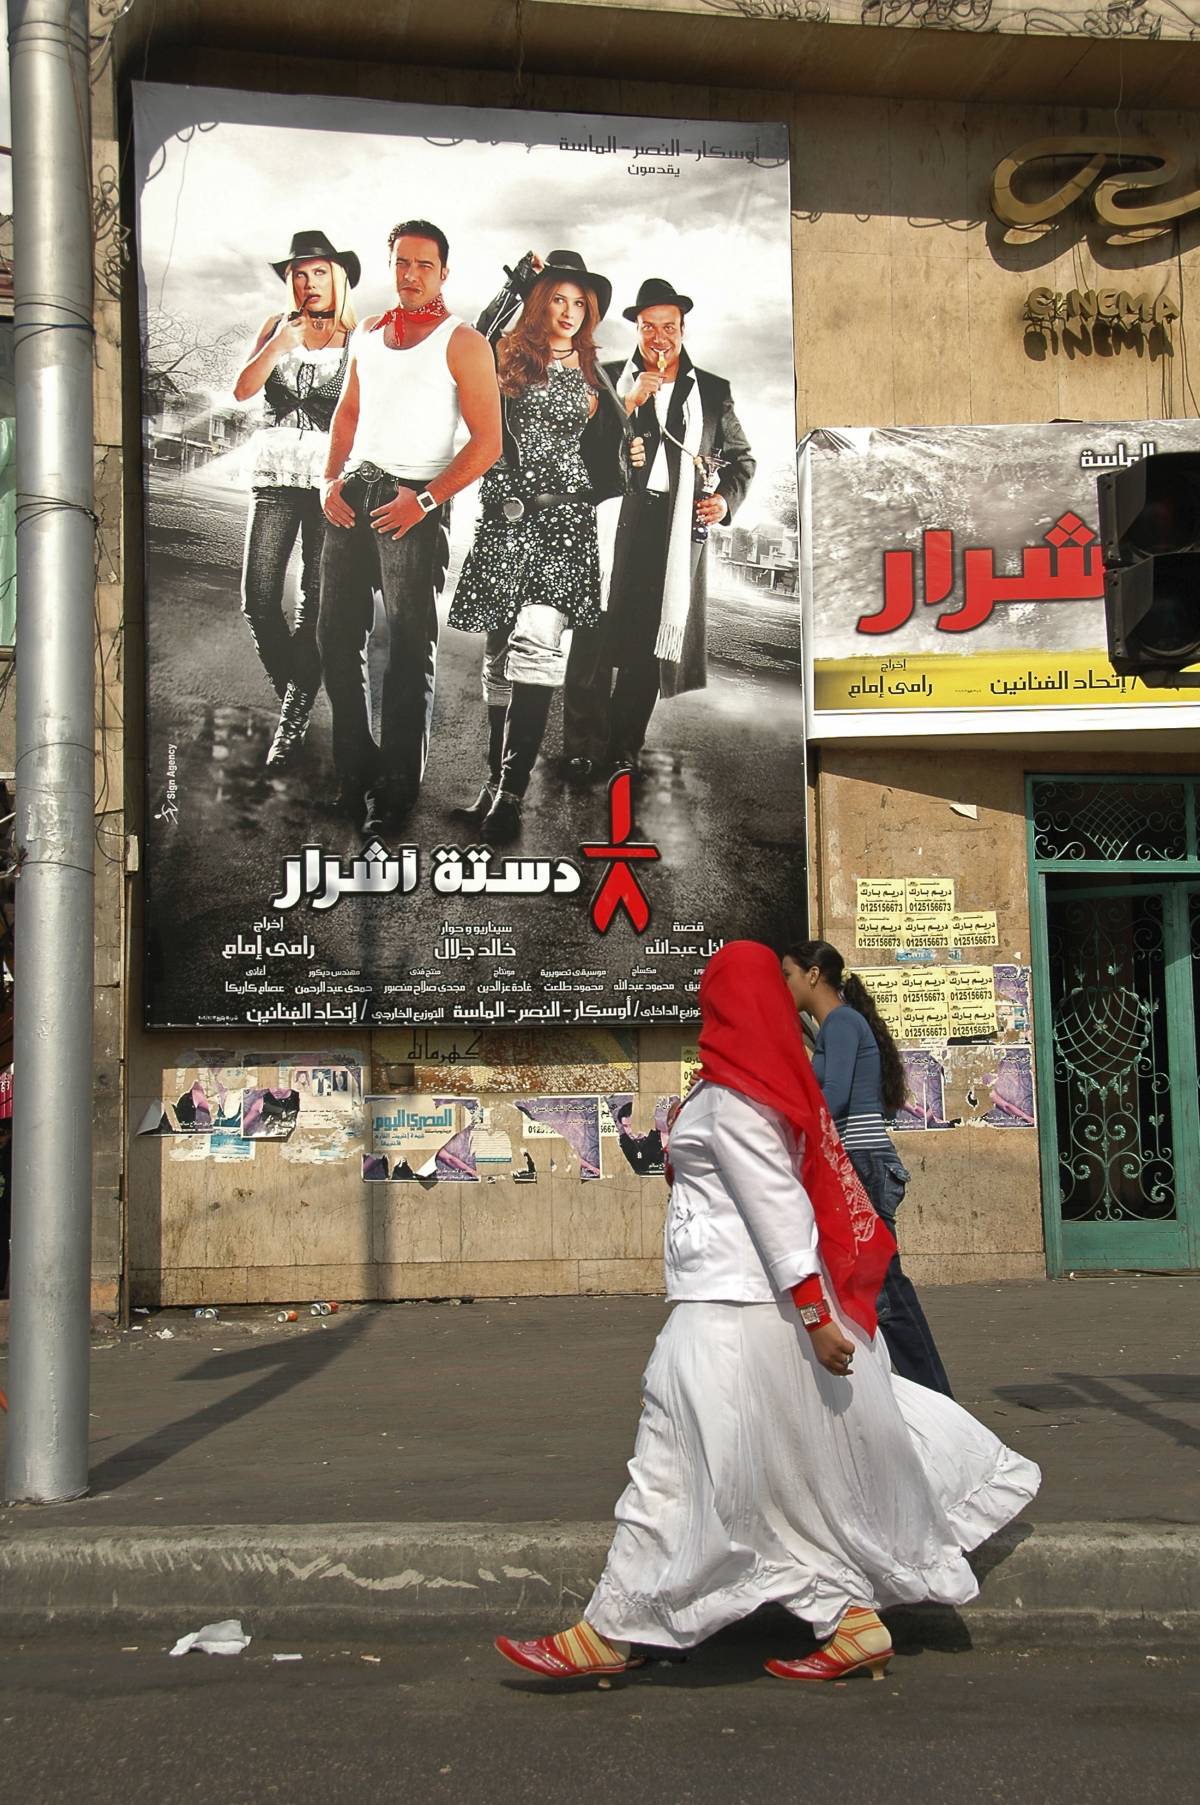 Riad si finge "liberal" per mascherare i suoi orrori